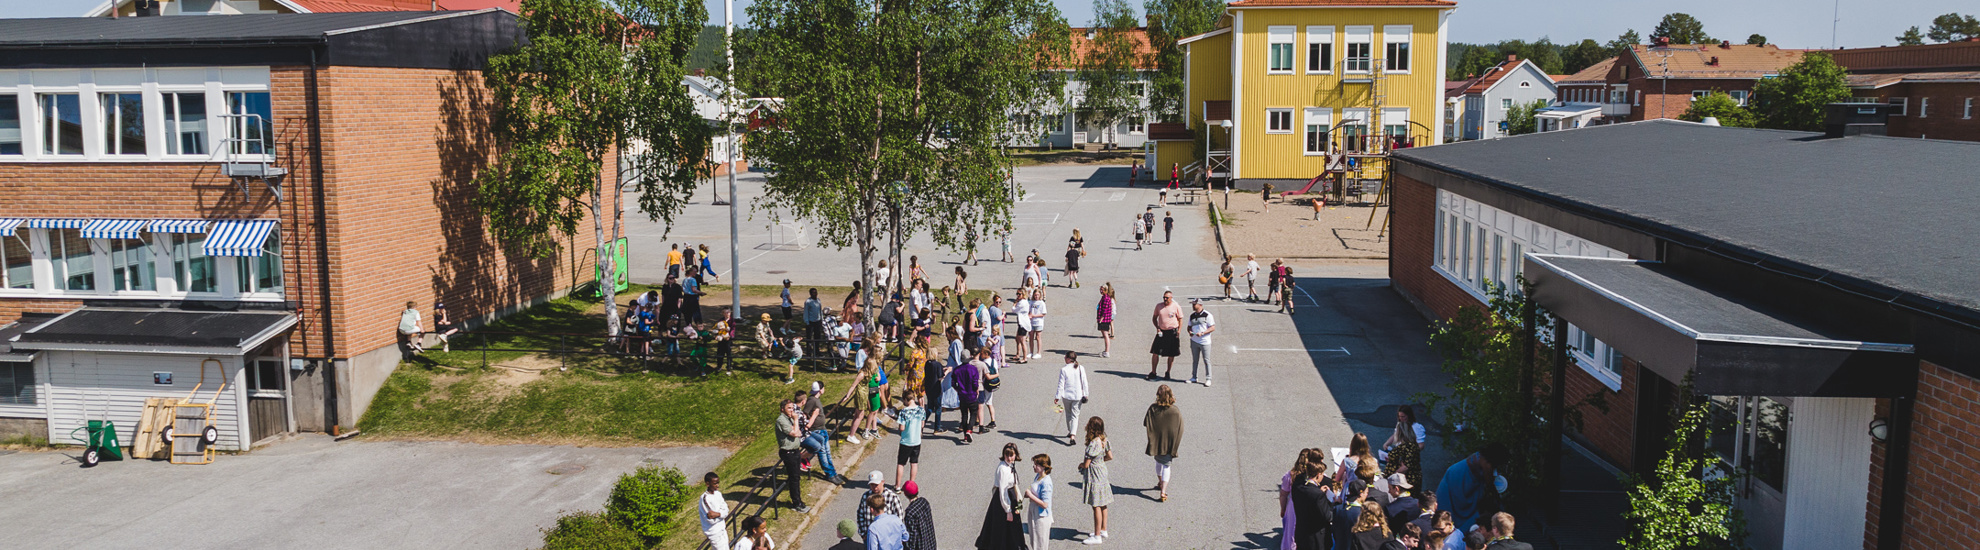 Överblicksbild av Vindelälvsskolans skolgård. Flera finklädda barn och lärare står på skolgården.